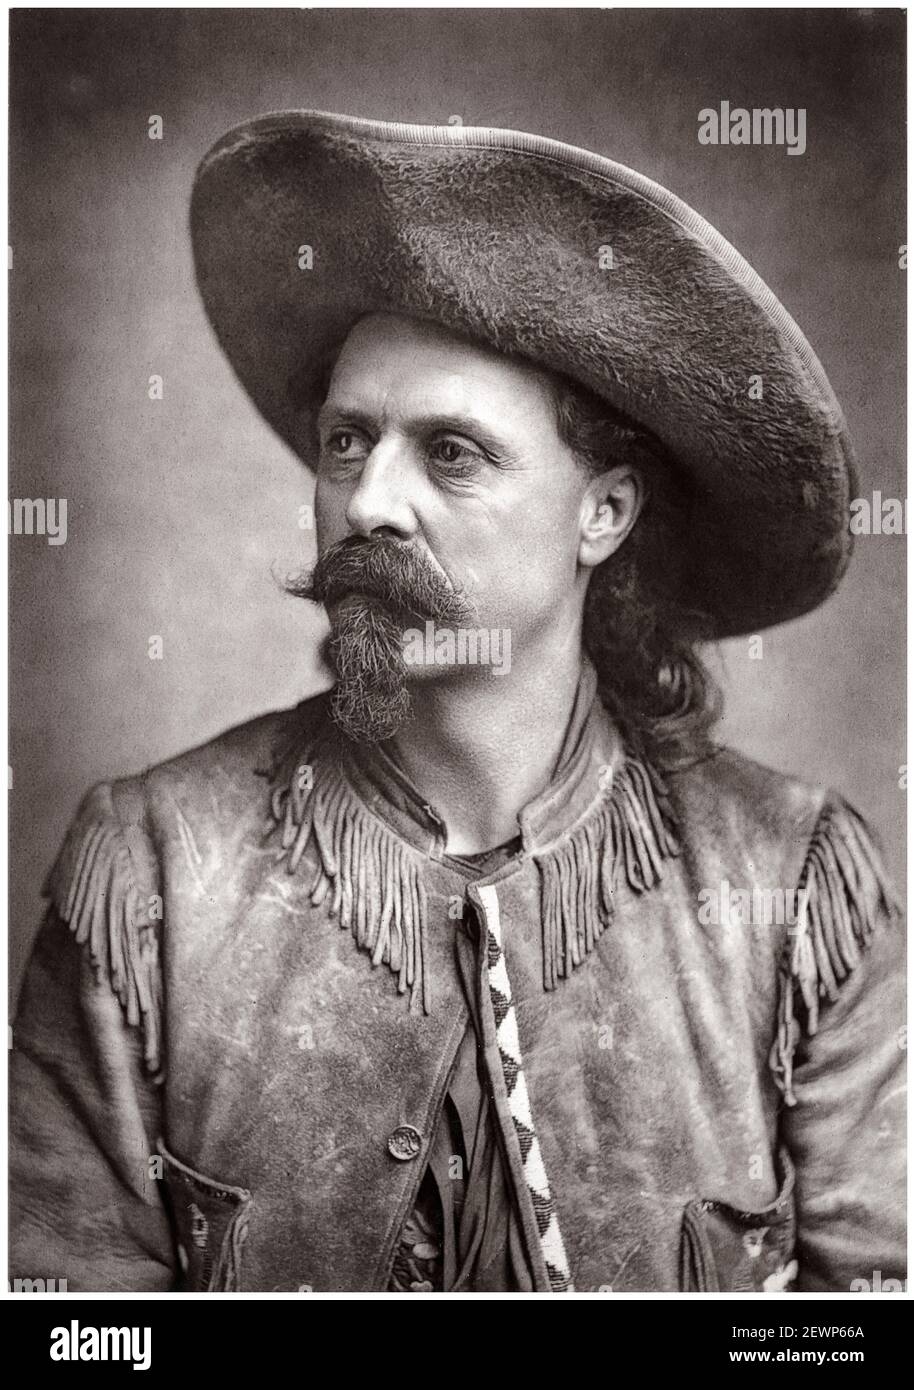 Buffalo Bill Cody, (William Frederick Cody, 1846-1917), amerikanischer Soldat, Bisons-Jäger und Showman, Portraitfoto, 1887 Stockfoto